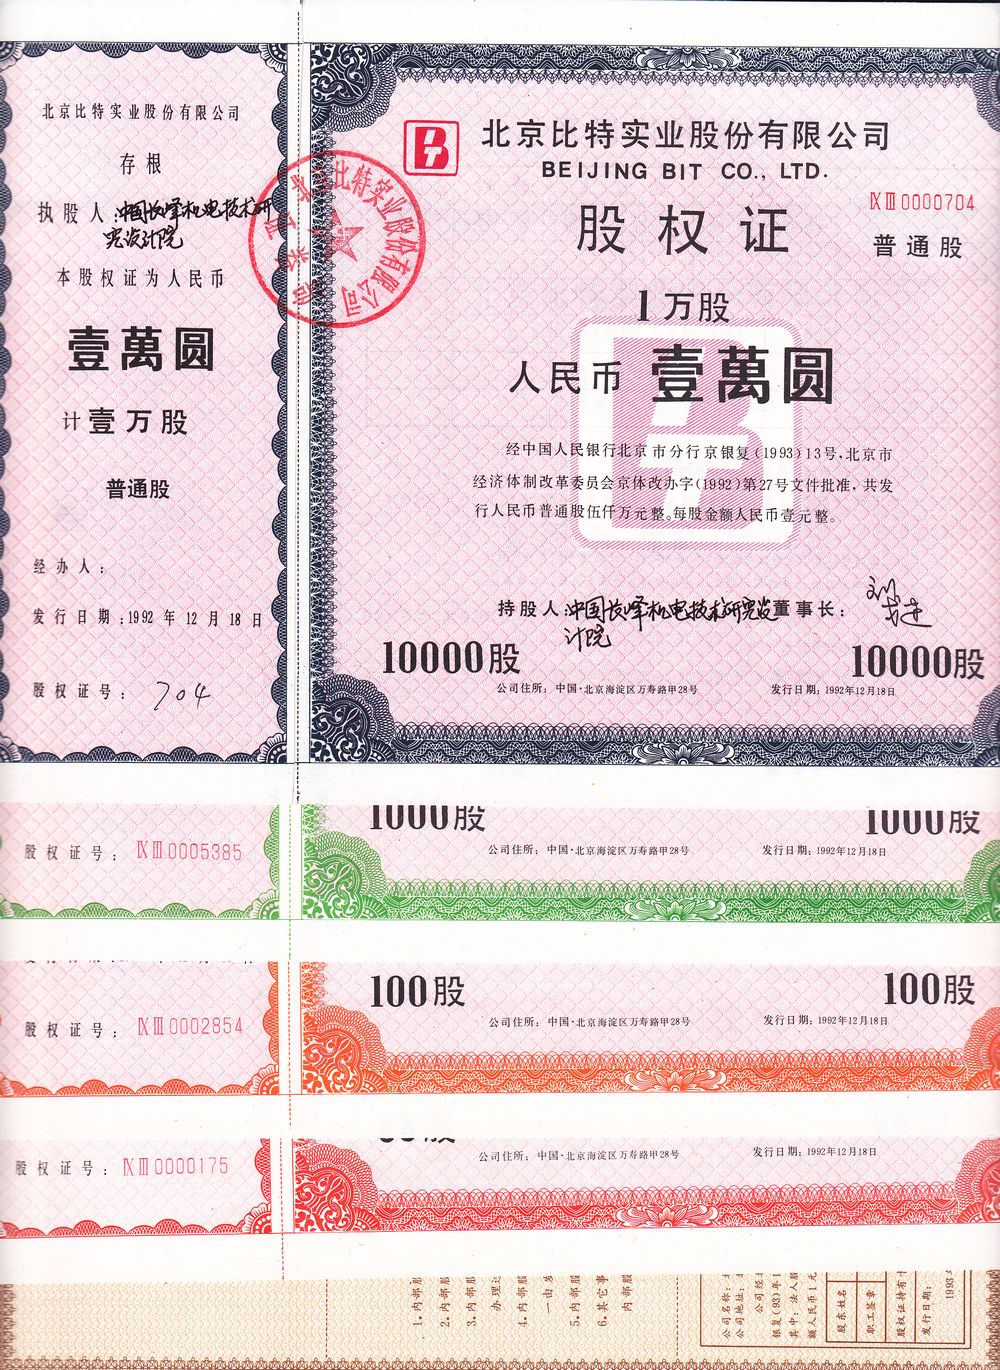 S3177, Beijing BIT Co. Ltd. Stock Certificate of Full 5 Pcs, 1992